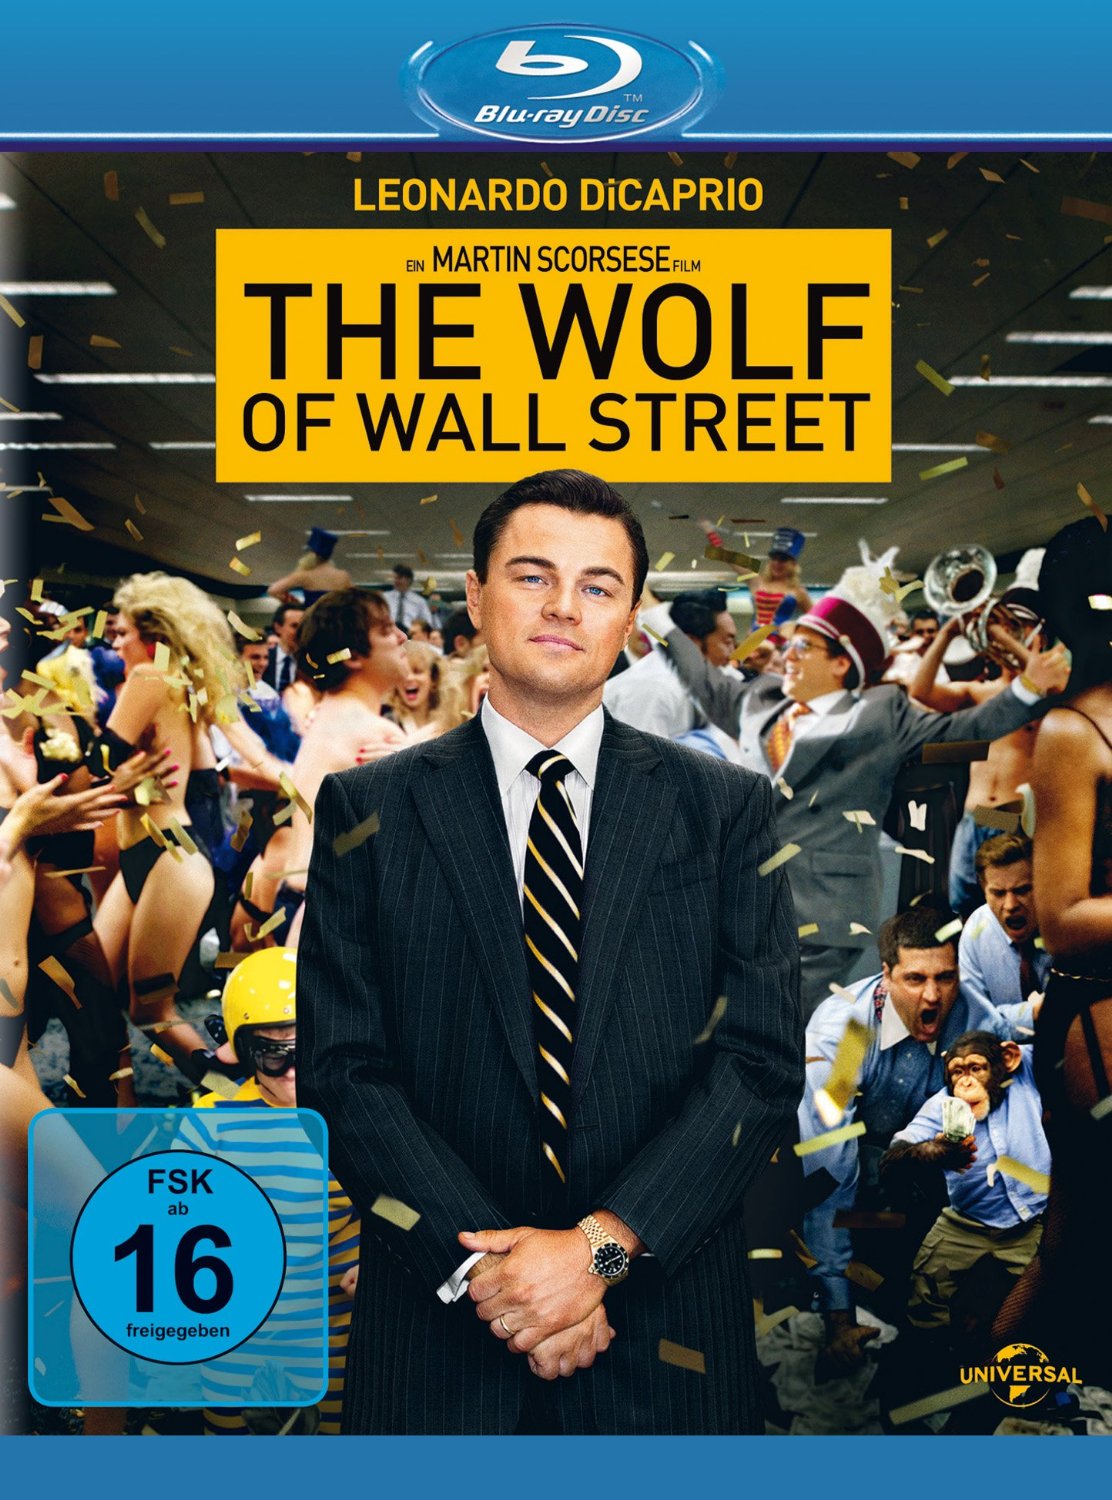 The Wolf of Wall Street (Oder: Ein Wolf im weißen Countach)